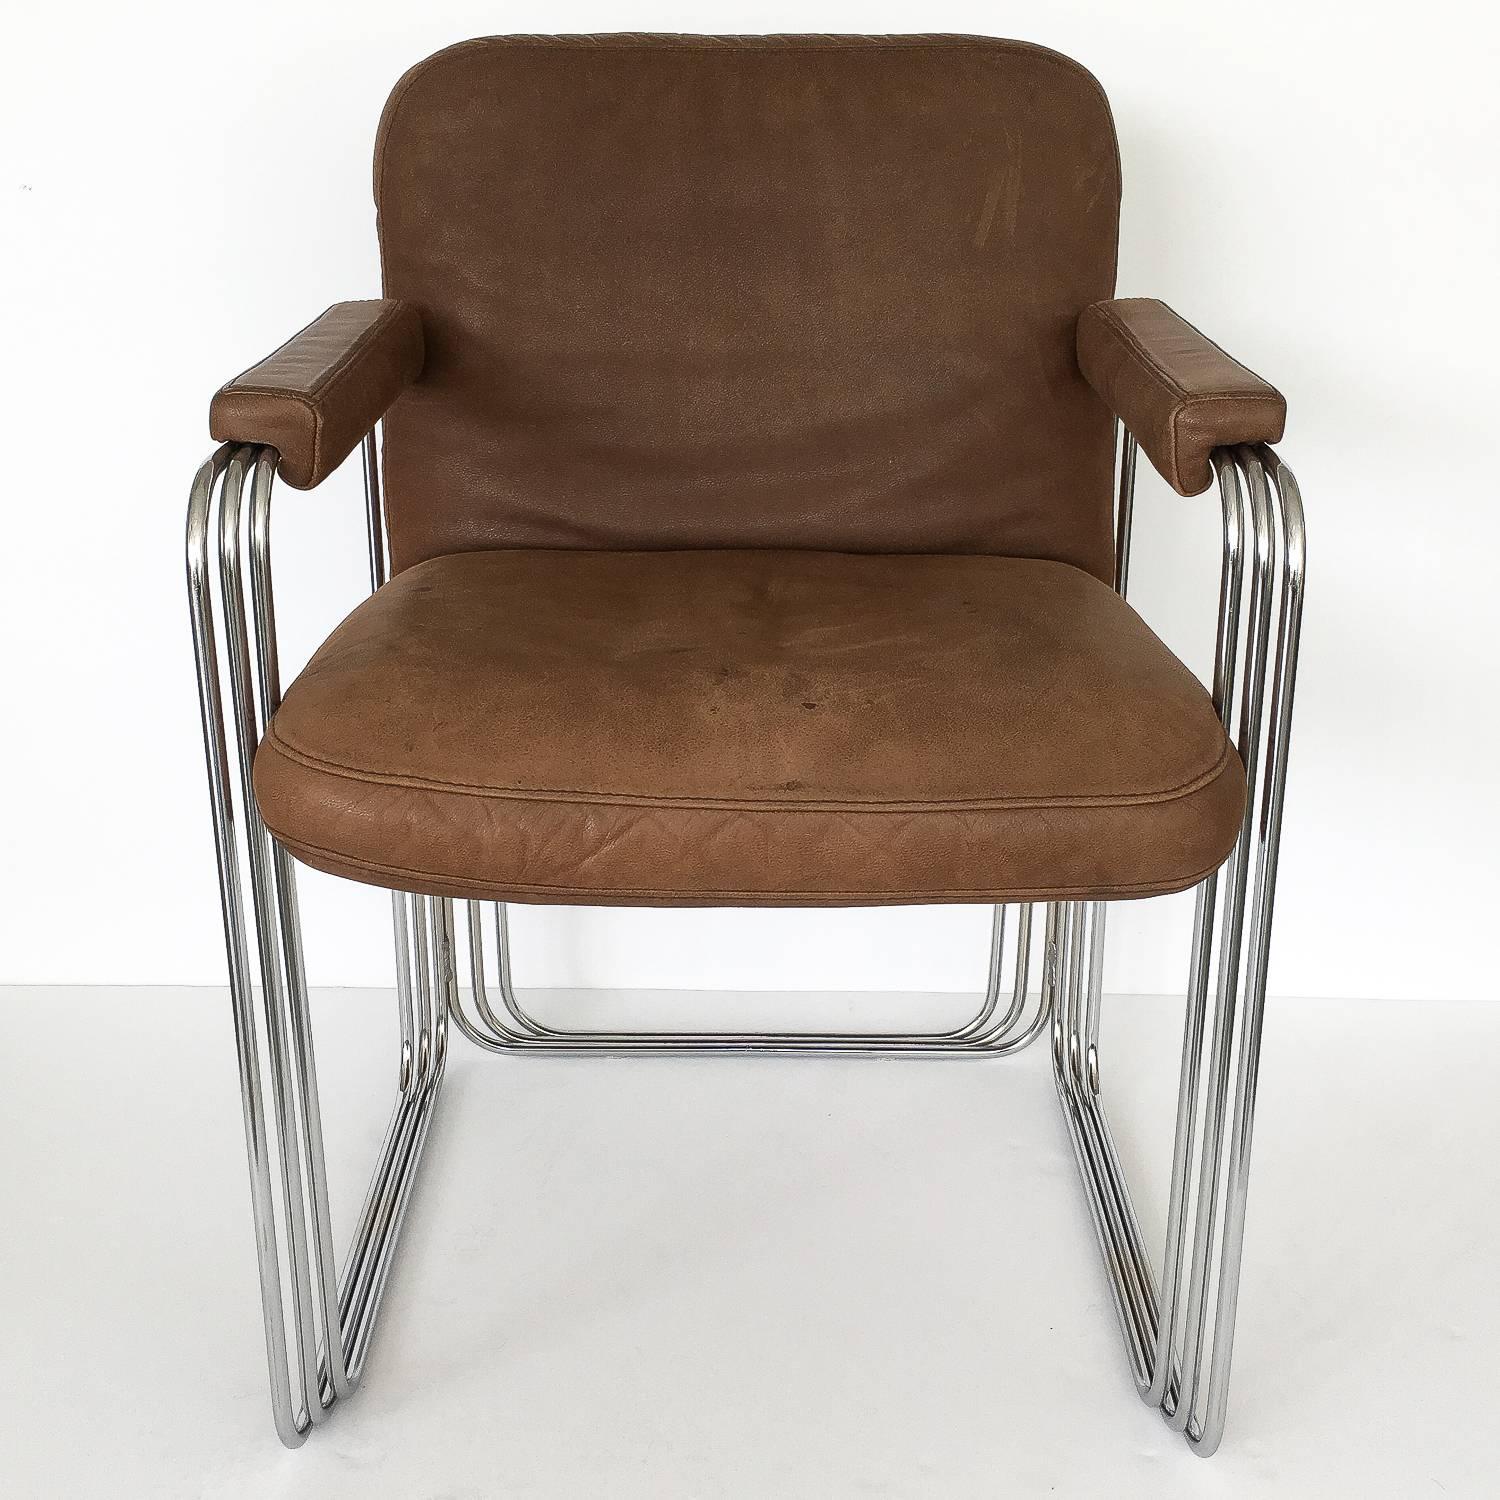 Satz von sechs einzigartigen Esstischsesseln mit Chromgestell und braunem Leder:: ca. 1970er Jahre. Diese Stühle bestehen aus einem gestapelten und abgestuften Gestell aus verchromtem Stahl. Der Rahmen der Stühle bildet einen dreidimensionalen::